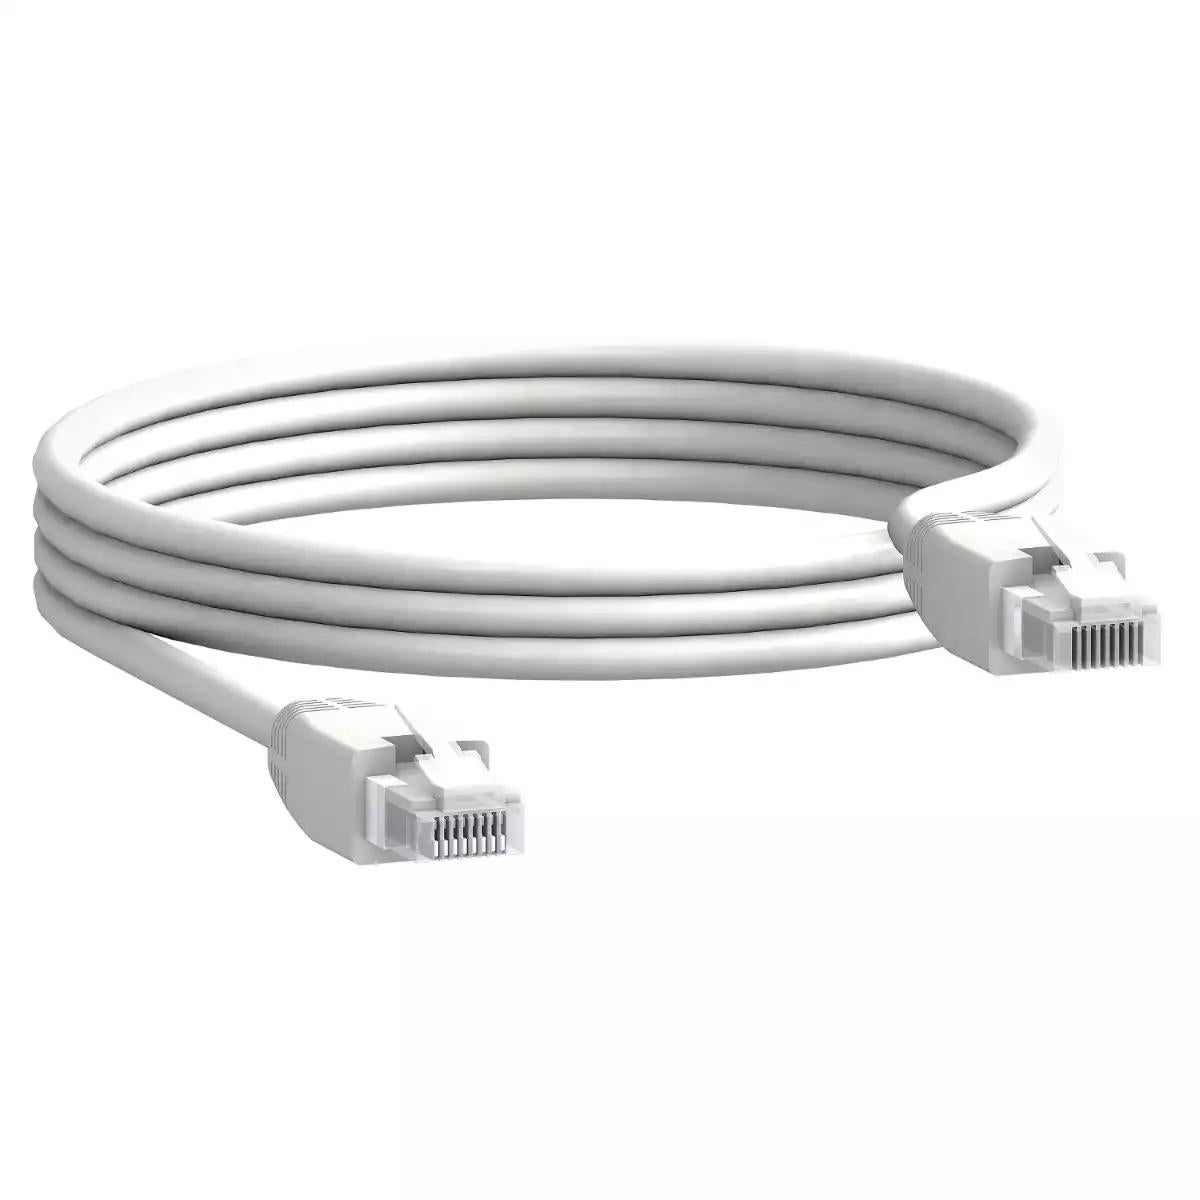 Communication cable, 2 x RJ45 male connectors, 5 m length, set of 5 parts